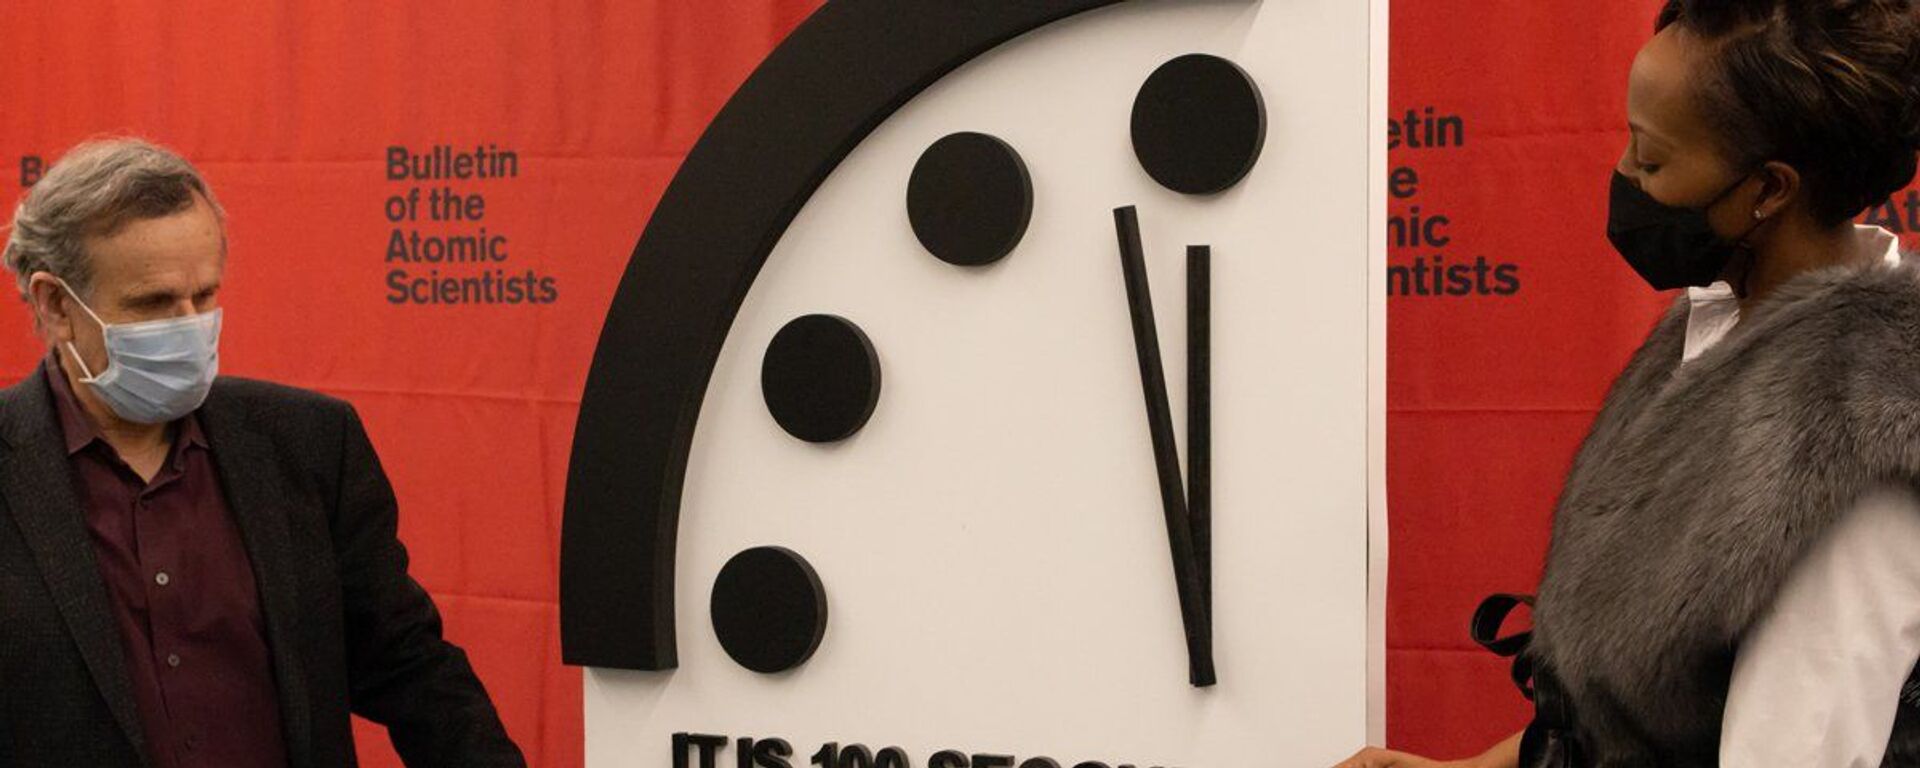 Atom Bilimcileri Bülteni'nin 1947'de kurduğu 'Kıyamet Saati' (Doomsday Clock), koronavirüs pandemisi döneminde geçen yıl ilerlediği geceyarısına 100 saniye kaladan bu yıl da geriye gidemedi. - Sputnik Türkiye, 1920, 20.01.2022